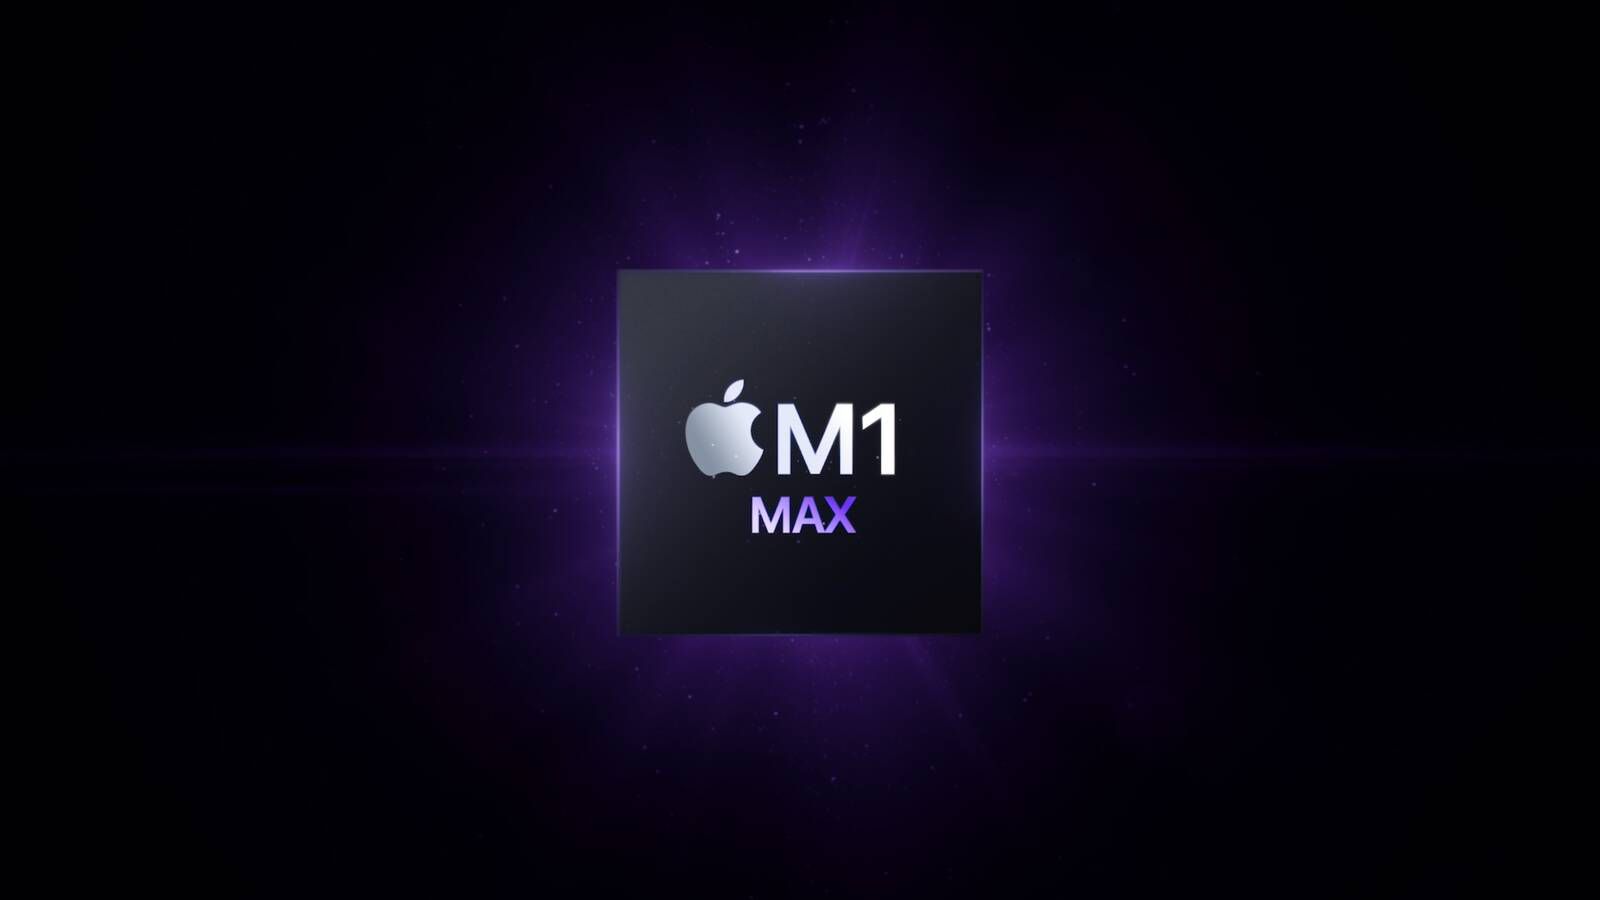 Режим повышенной производительности будет доступен только на MacBook Pro с чипом M1 Max